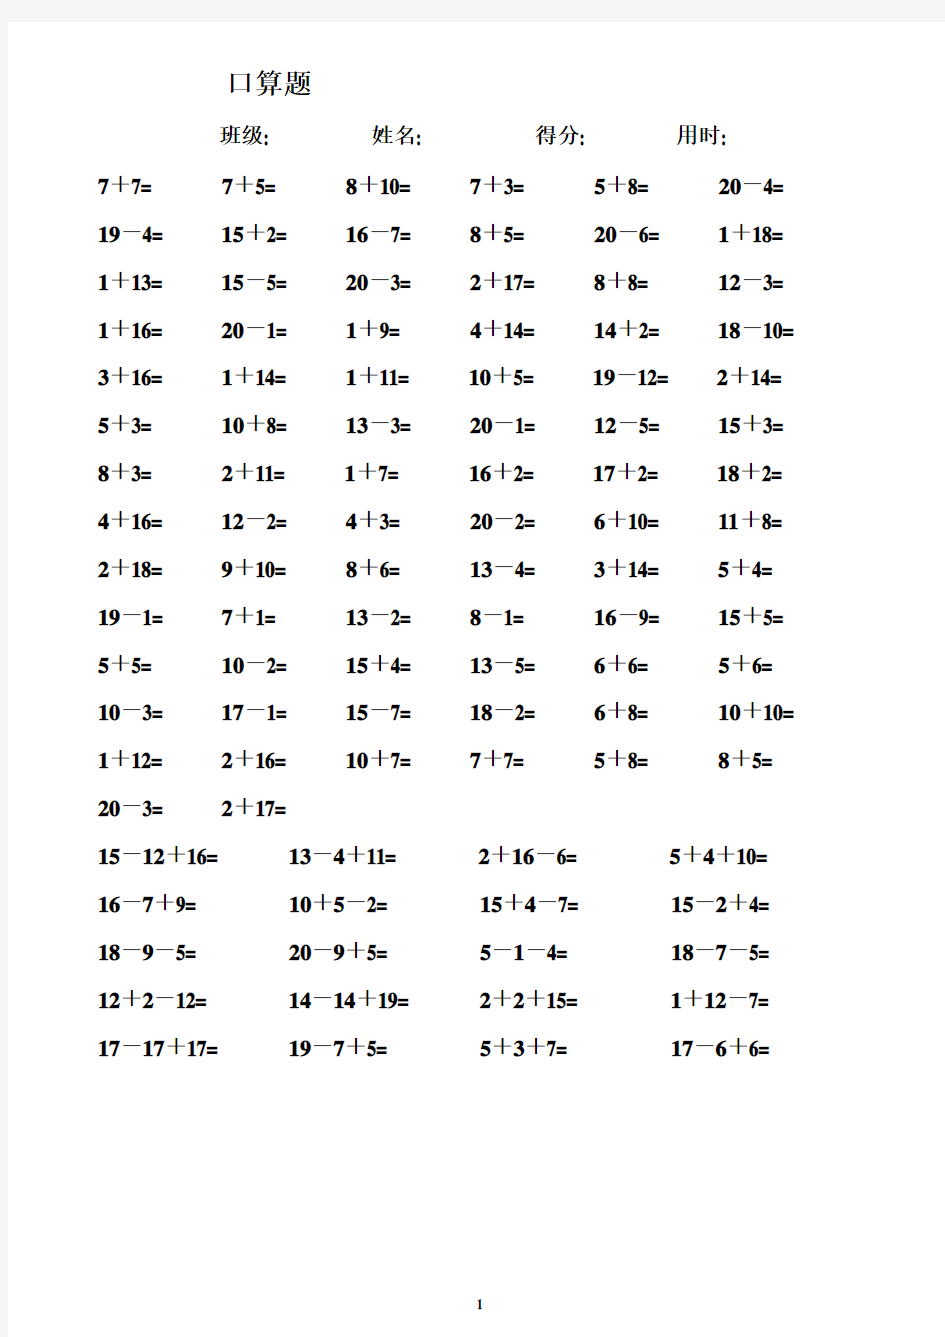 一年级数学练习题_20以内加减法口算题(4000道)直接打印版[1]